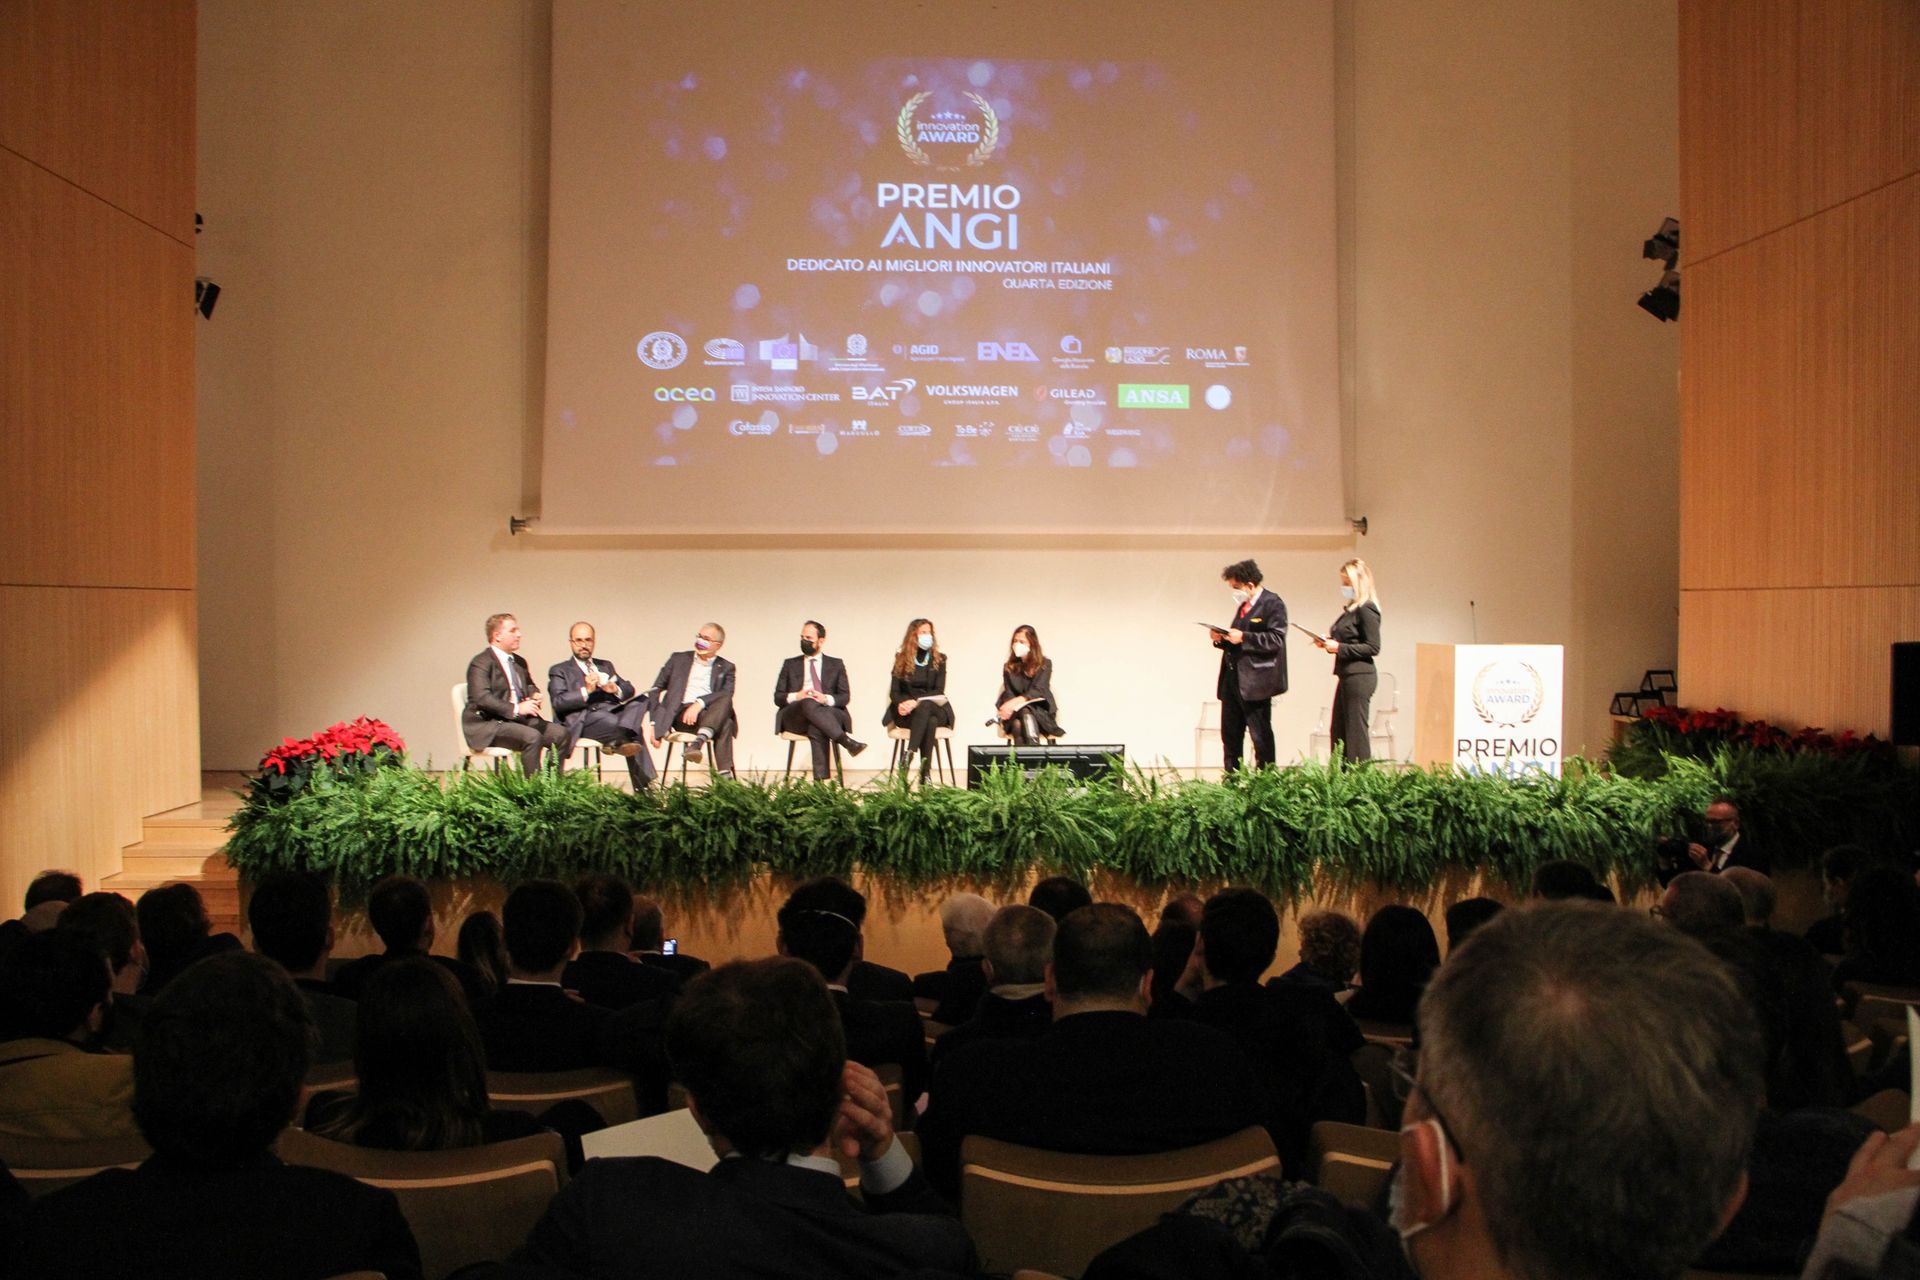 La cerimonia di consegna della quarta edizione del "Premio ANGI" a 30 startup italiane innovative